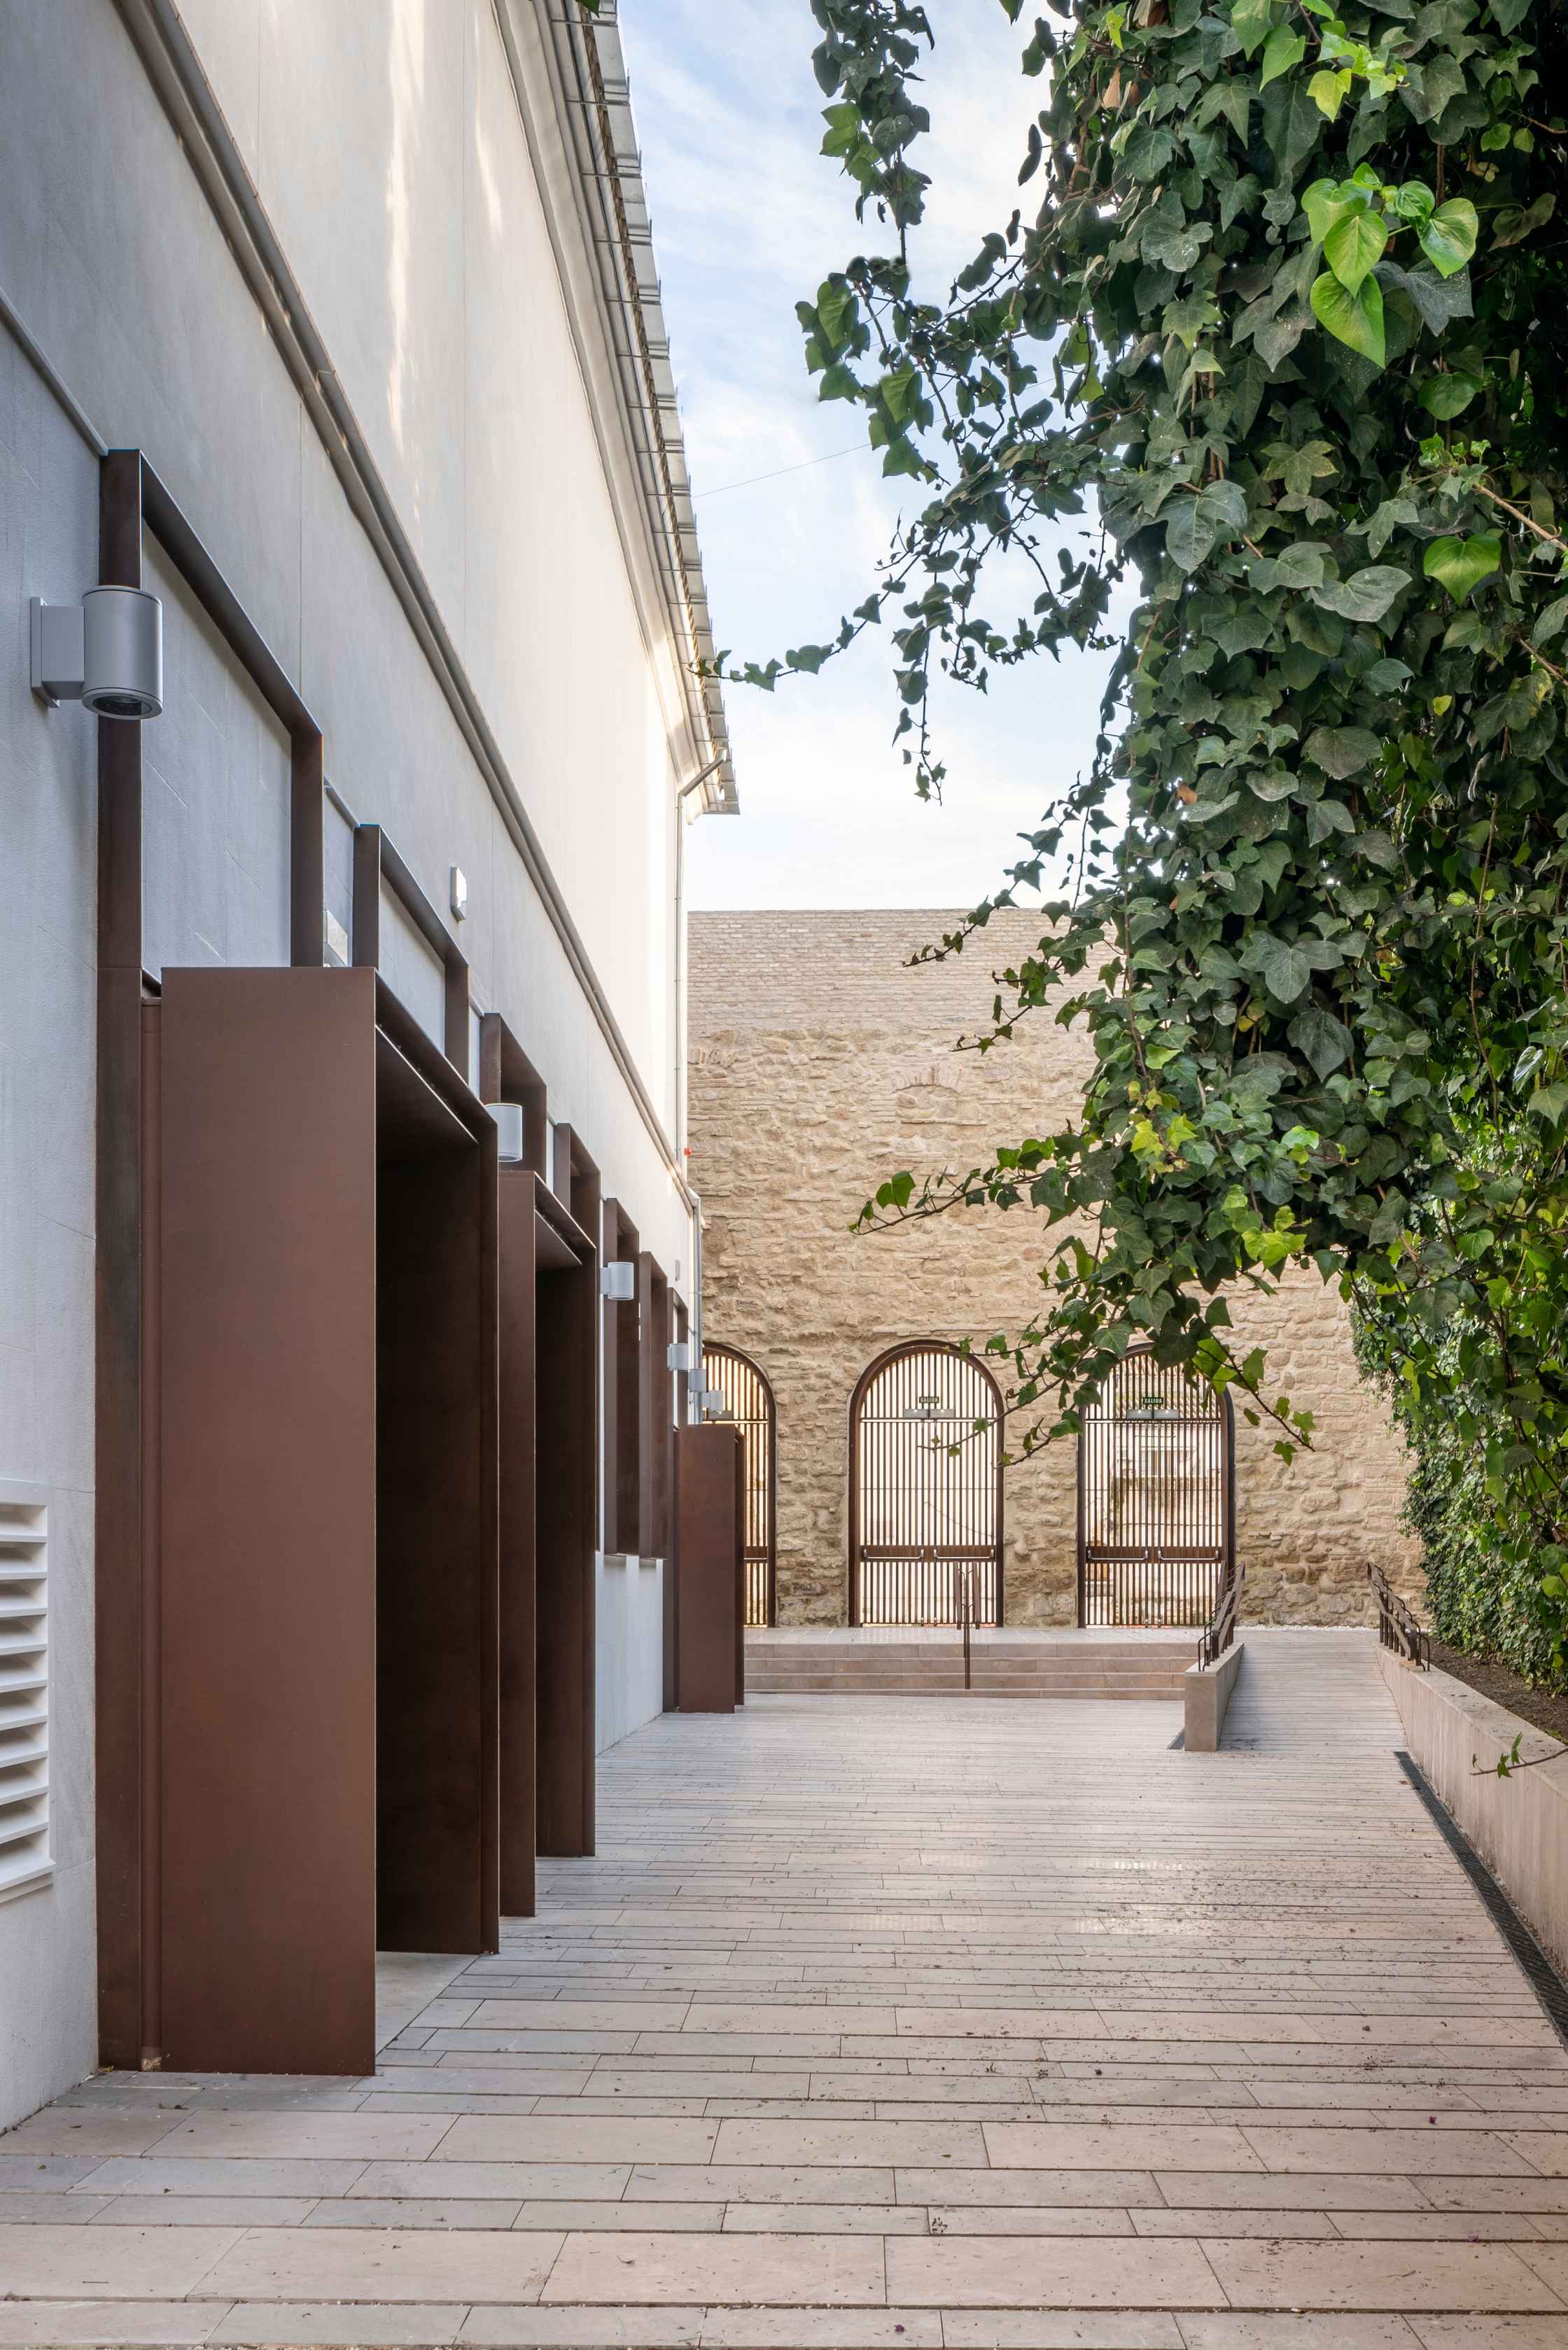 Patio Adarve del Palacio de Congresos, un espacio de arquitectura contemporánea en pleno corazón de la judería, junto a la Mezquita-Catedral de Córdoba (España). Proyecto: LAP arquitectos.